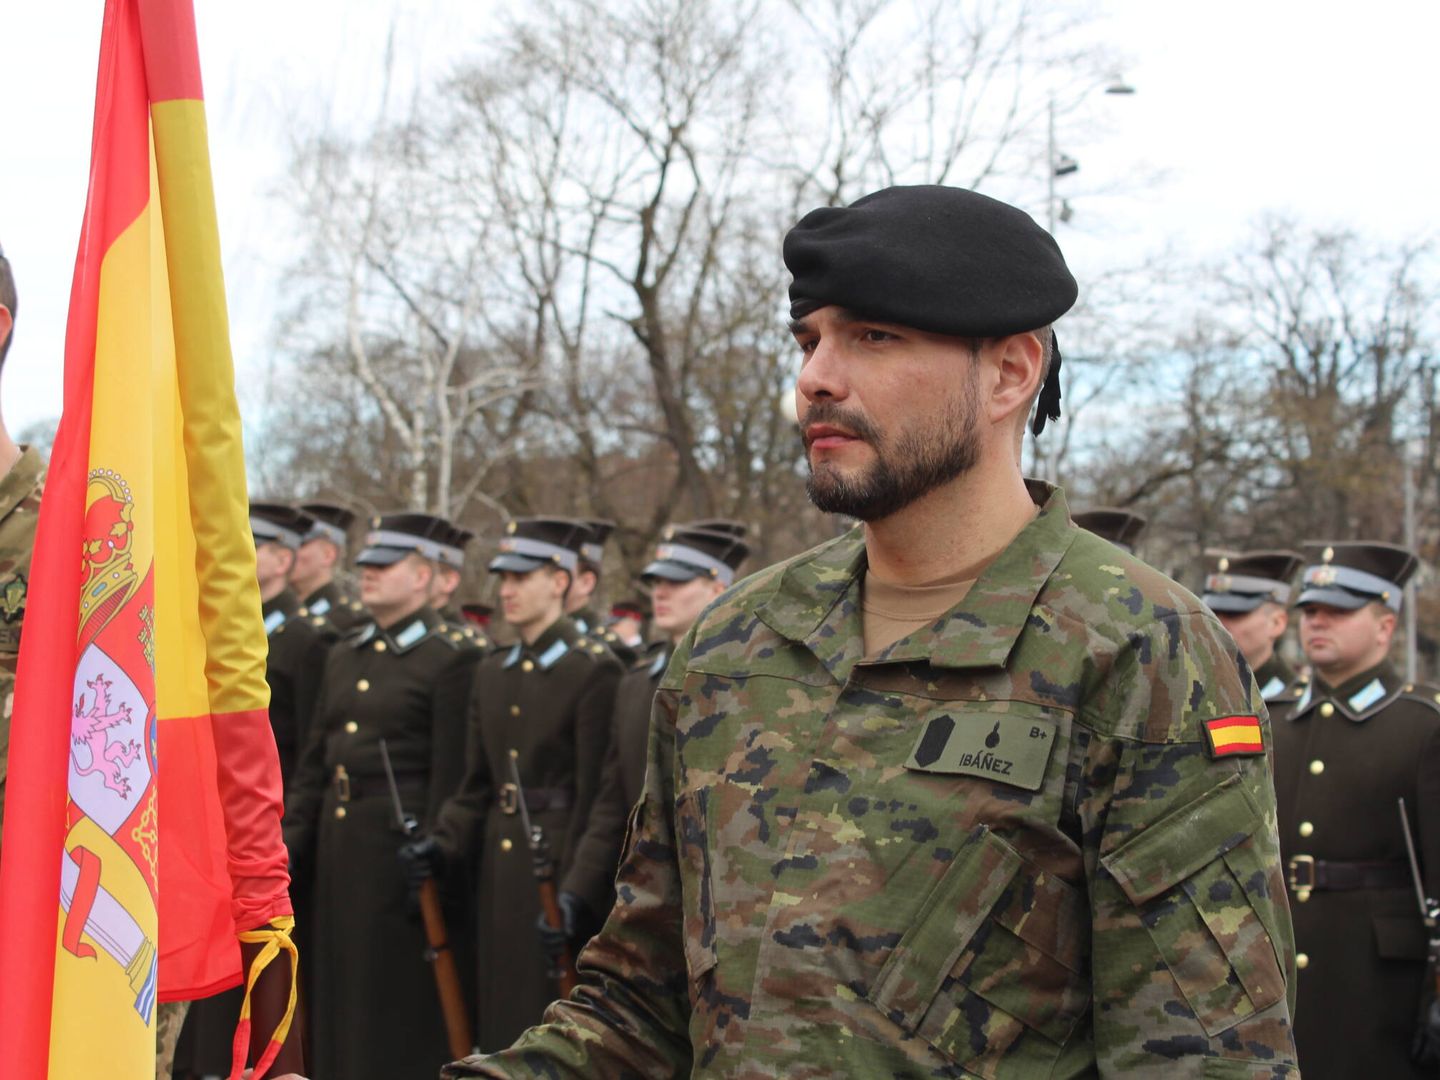 Uno de los soldados destinados en Letonia, posa con la bandera española en Riga. (Raúl Bobé)